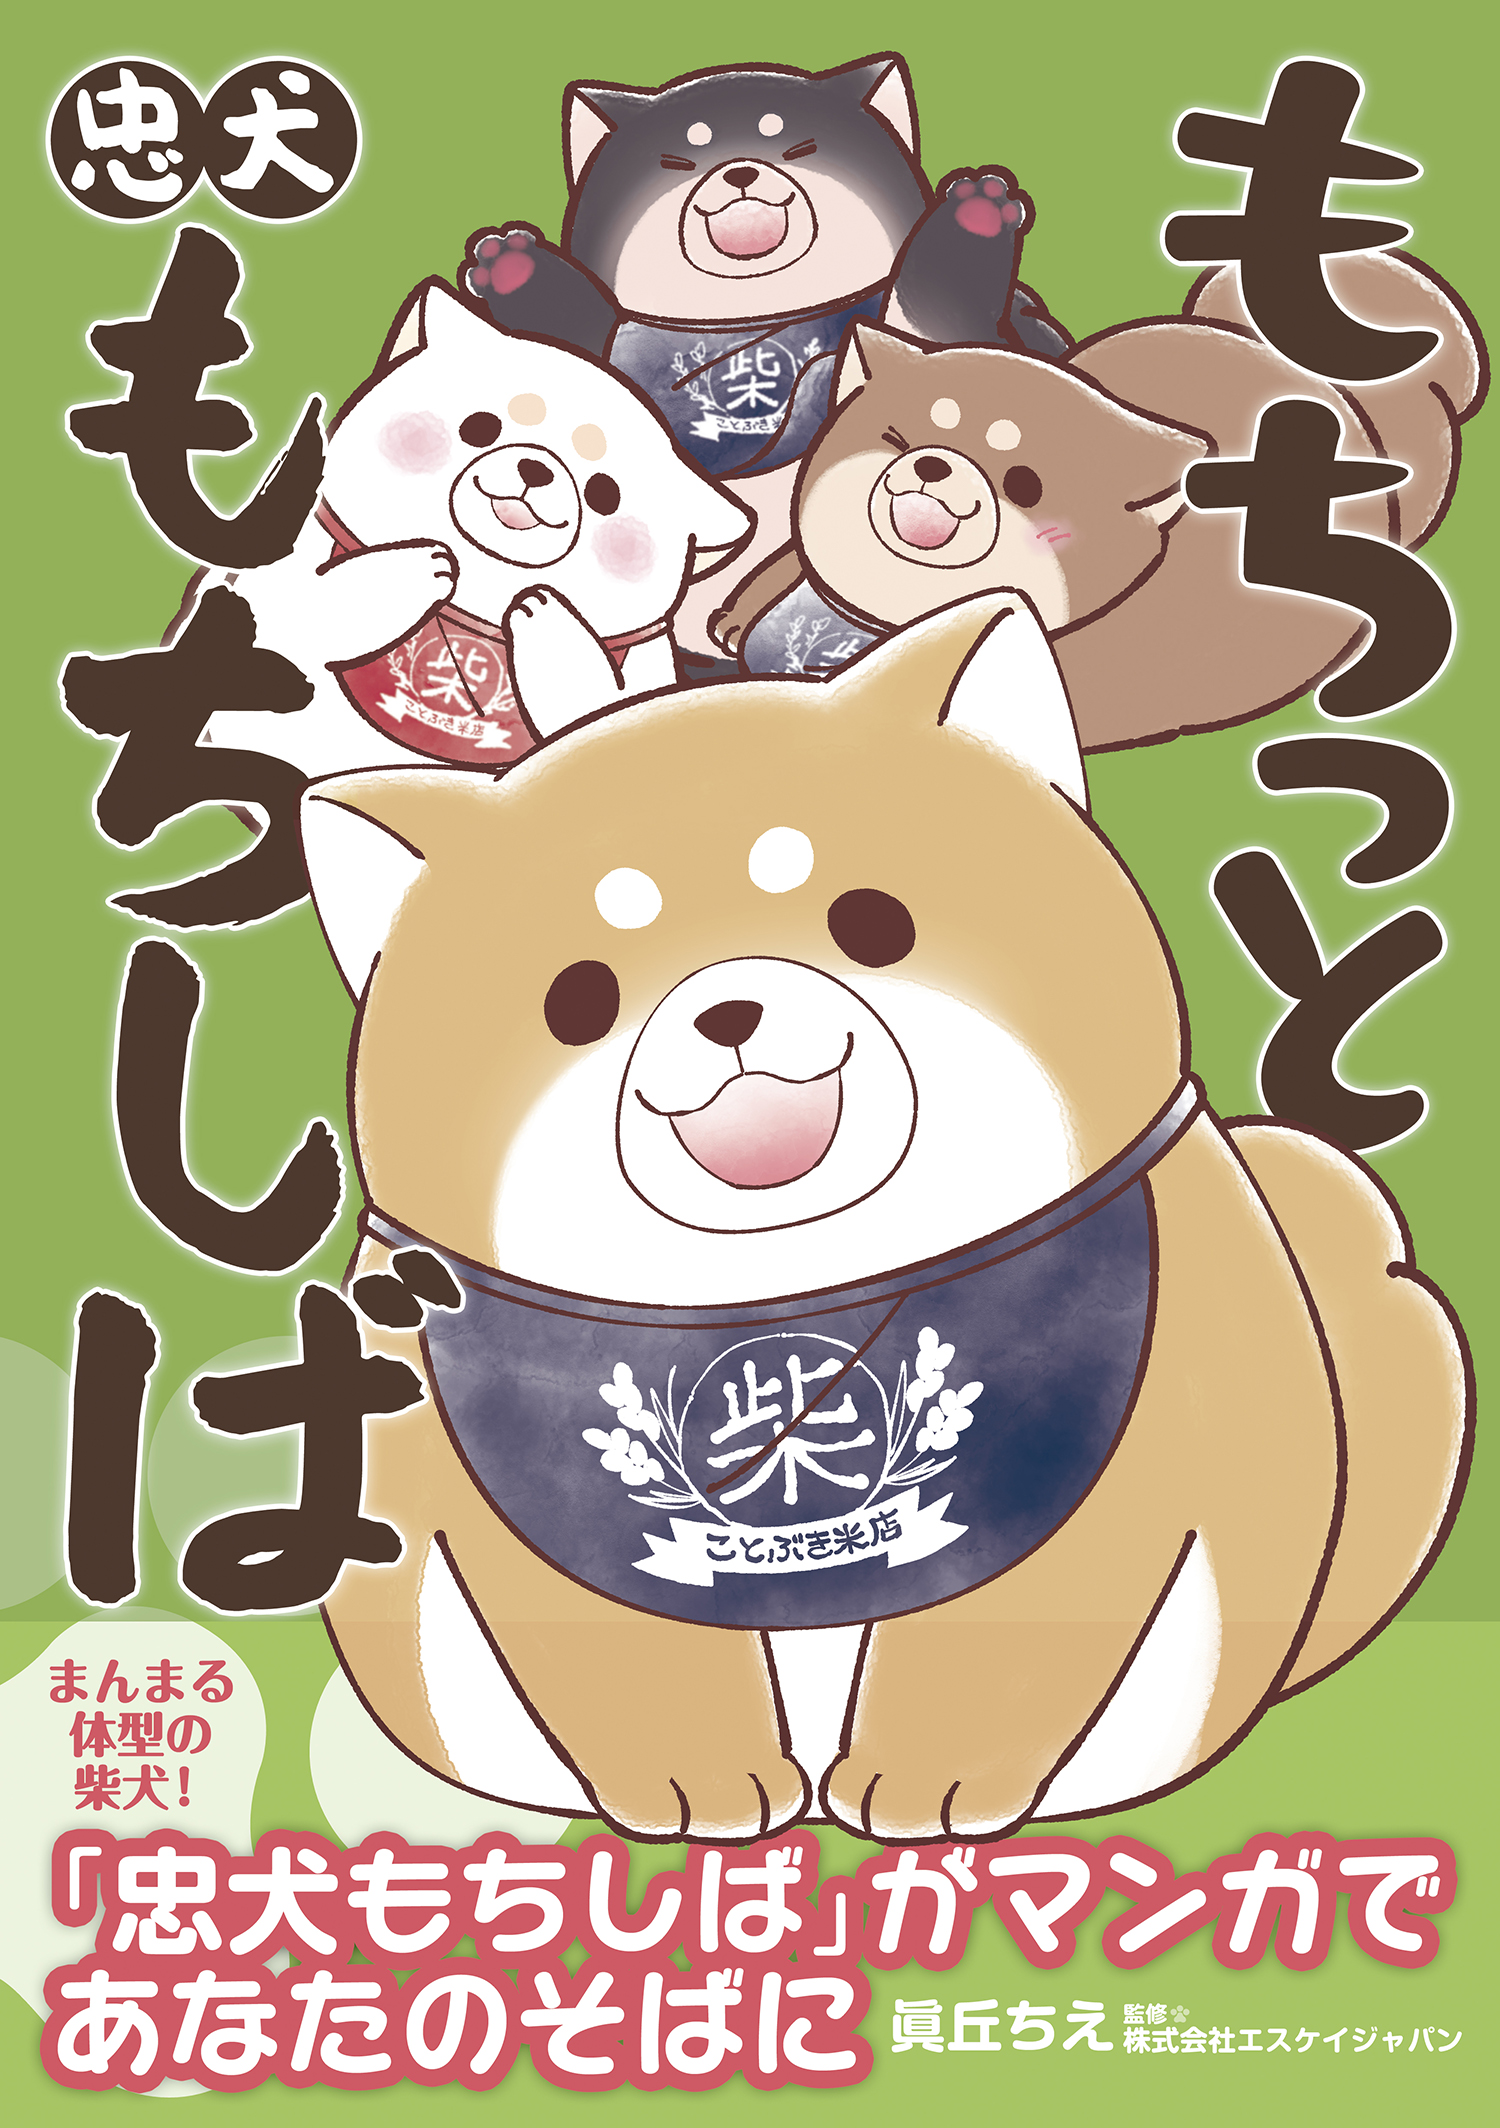 グッズやプライズでも大人気のキャラクターの柴犬 忠犬もちしば の4コママンガコミックス もちっと忠犬もちしば 4月11日 土 発売 株式会社kadokawaのプレスリリース